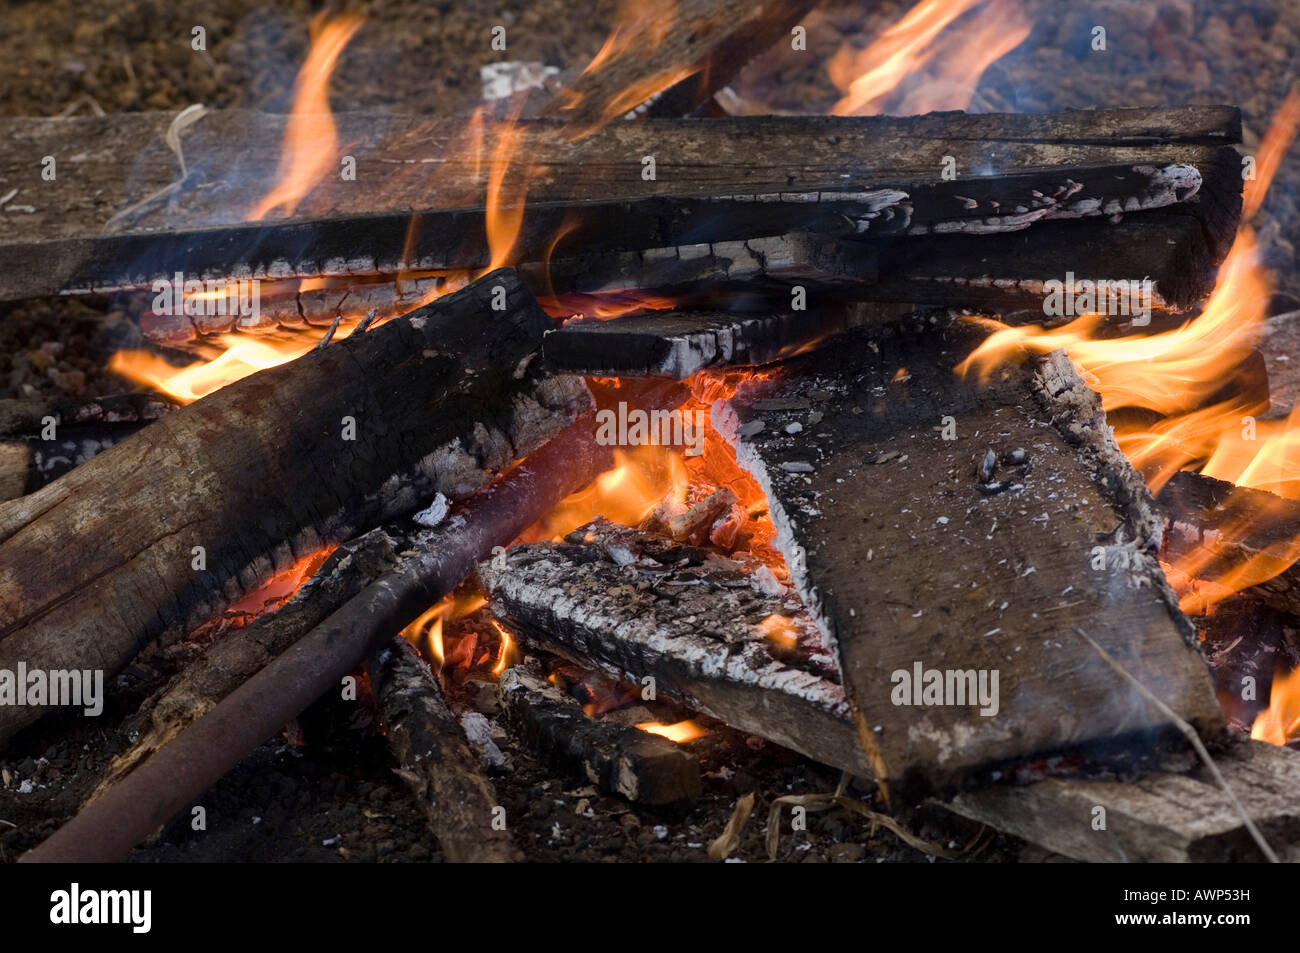 Il fuoco per riscaldare il ferro di branding (bestiame branding), Costa Rica, America Centrale Foto Stock